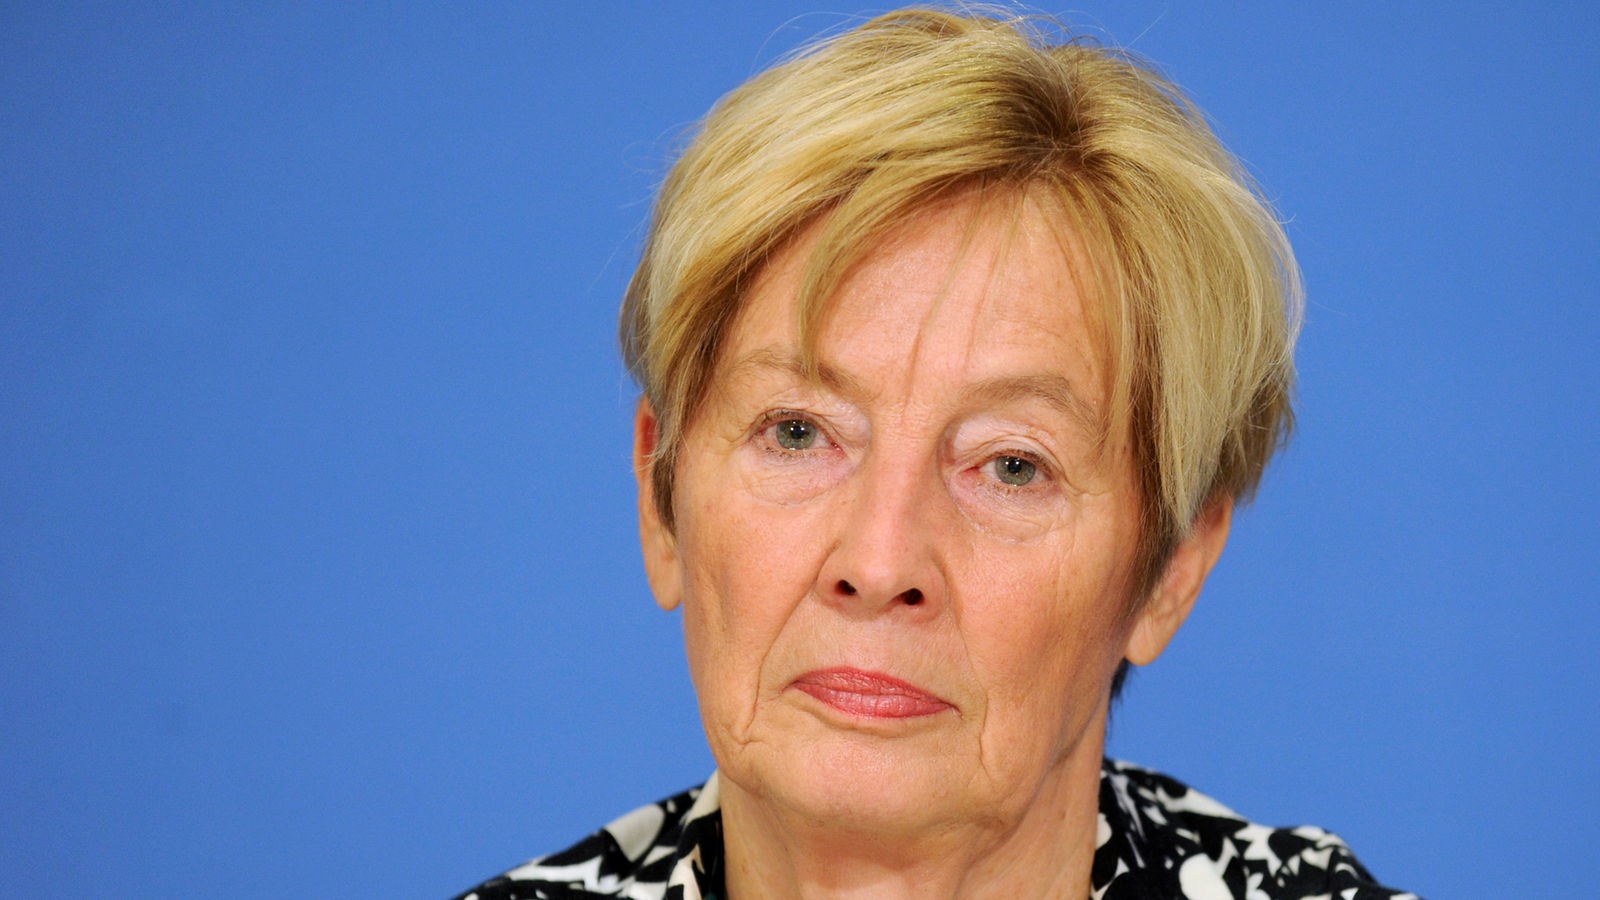 Christine Bergmann, Beauftragte der Bundesregierung zur Bekämpfung des sexuellen Missbrauchs, aufgenommen am Dienstag (21.09.2010) auf einer Pressekonferenz in Berlin.